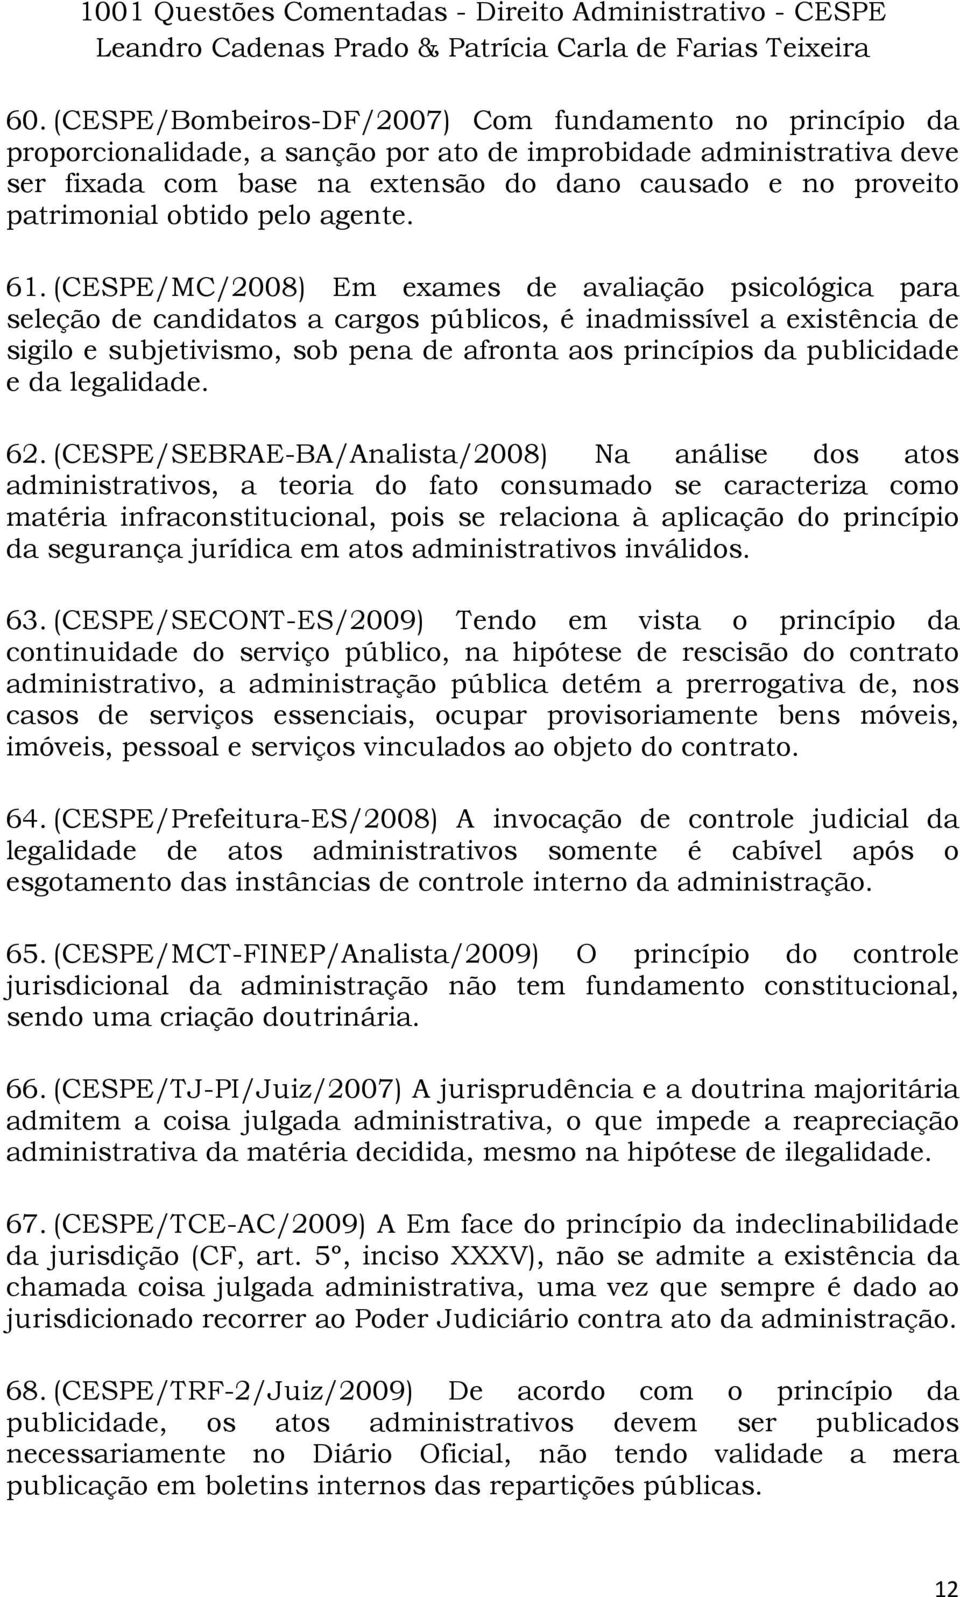 (CESPE/MC/2008) Em exames de avaliação psicológica para seleção de candidatos a cargos públicos, é inadmissível a existência de sigilo e subjetivismo, sob pena de afronta aos princípios da